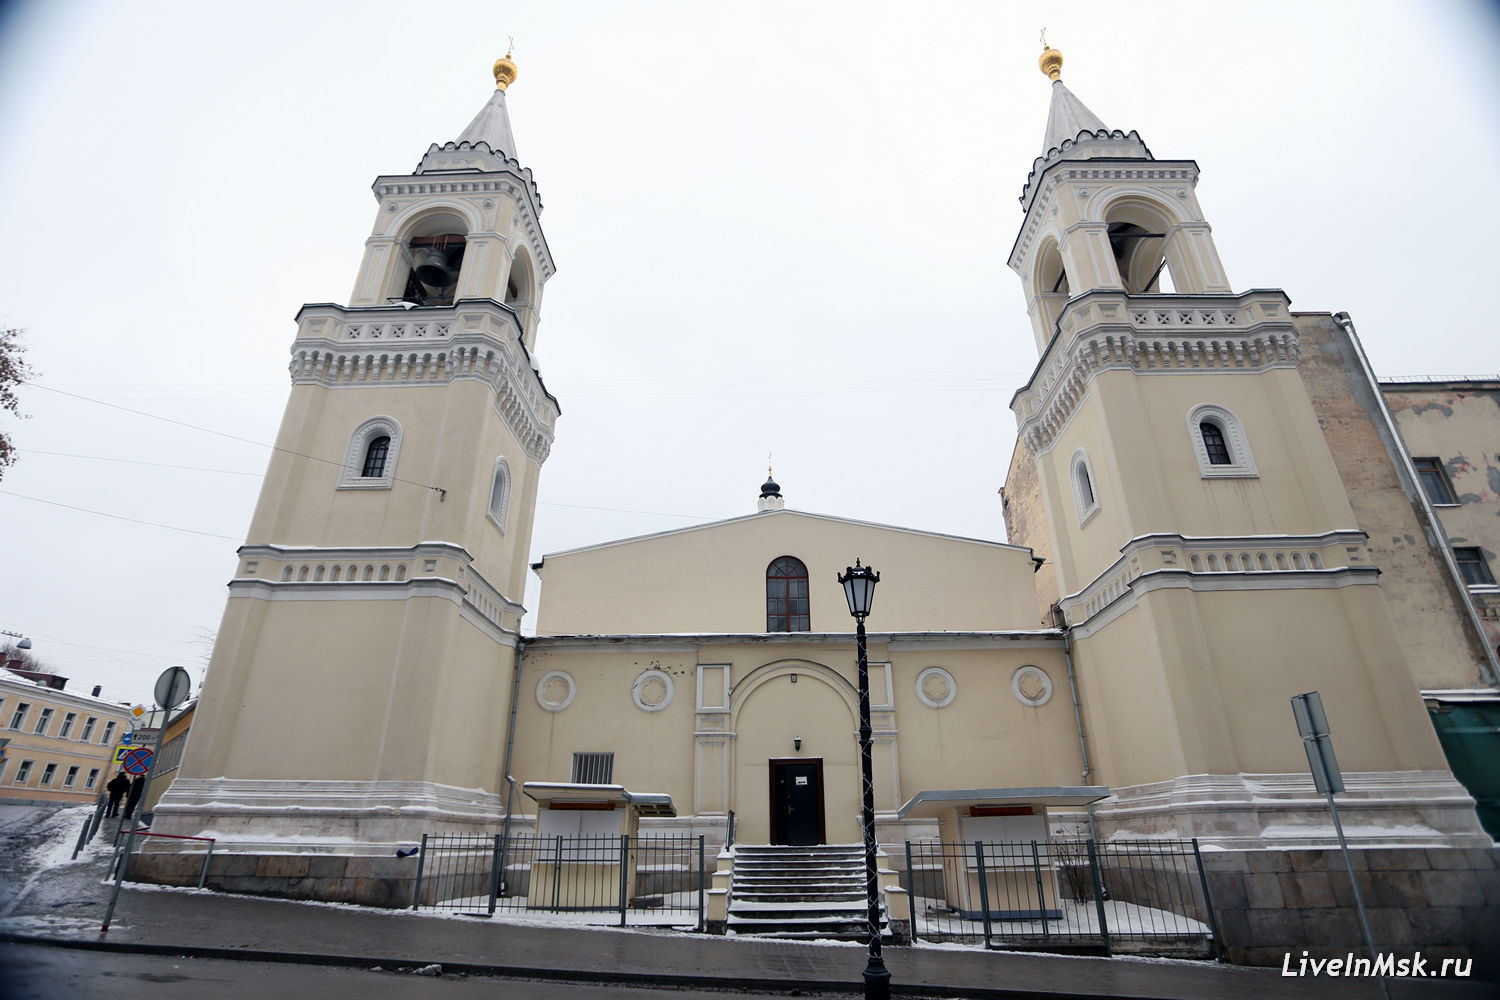 Ивановский монастырь, фото 2015 года